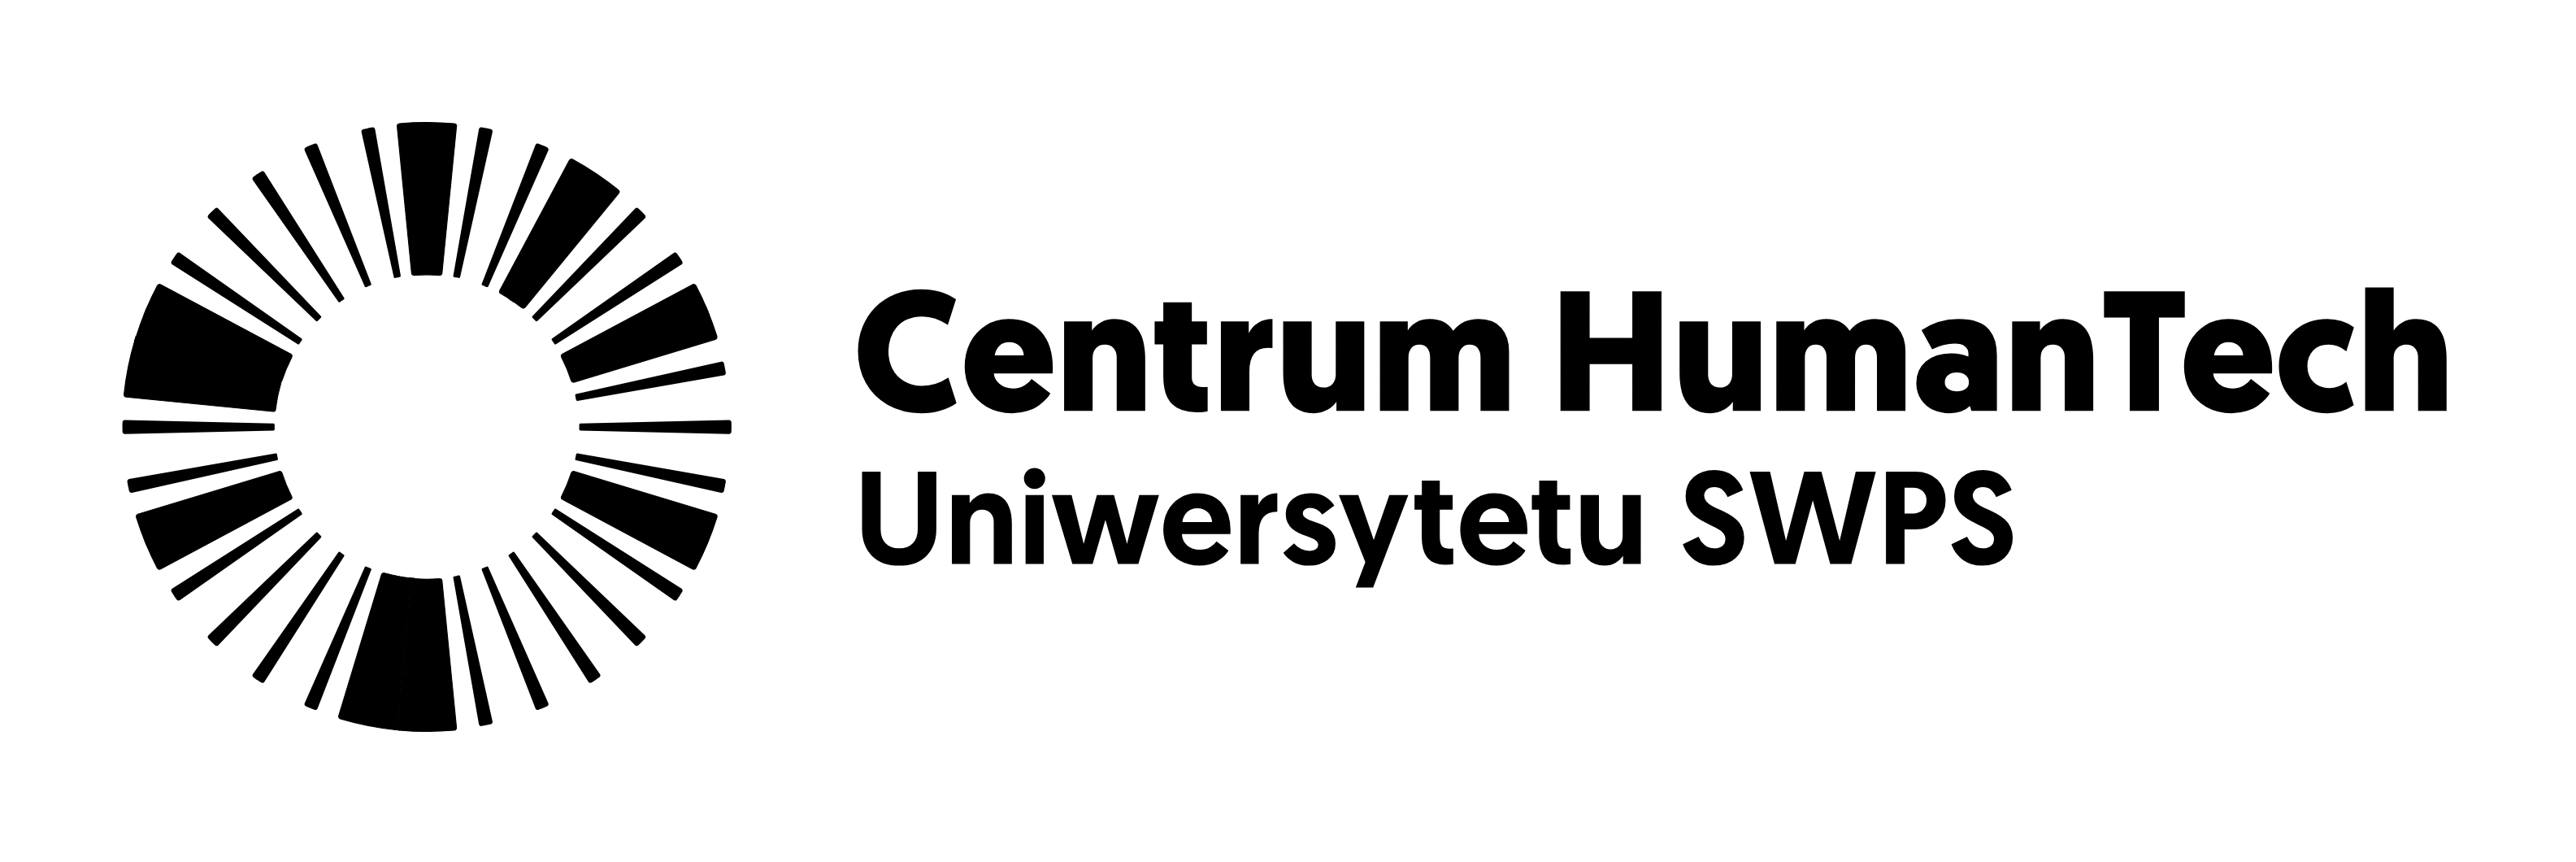 logo Centrum HumanTech